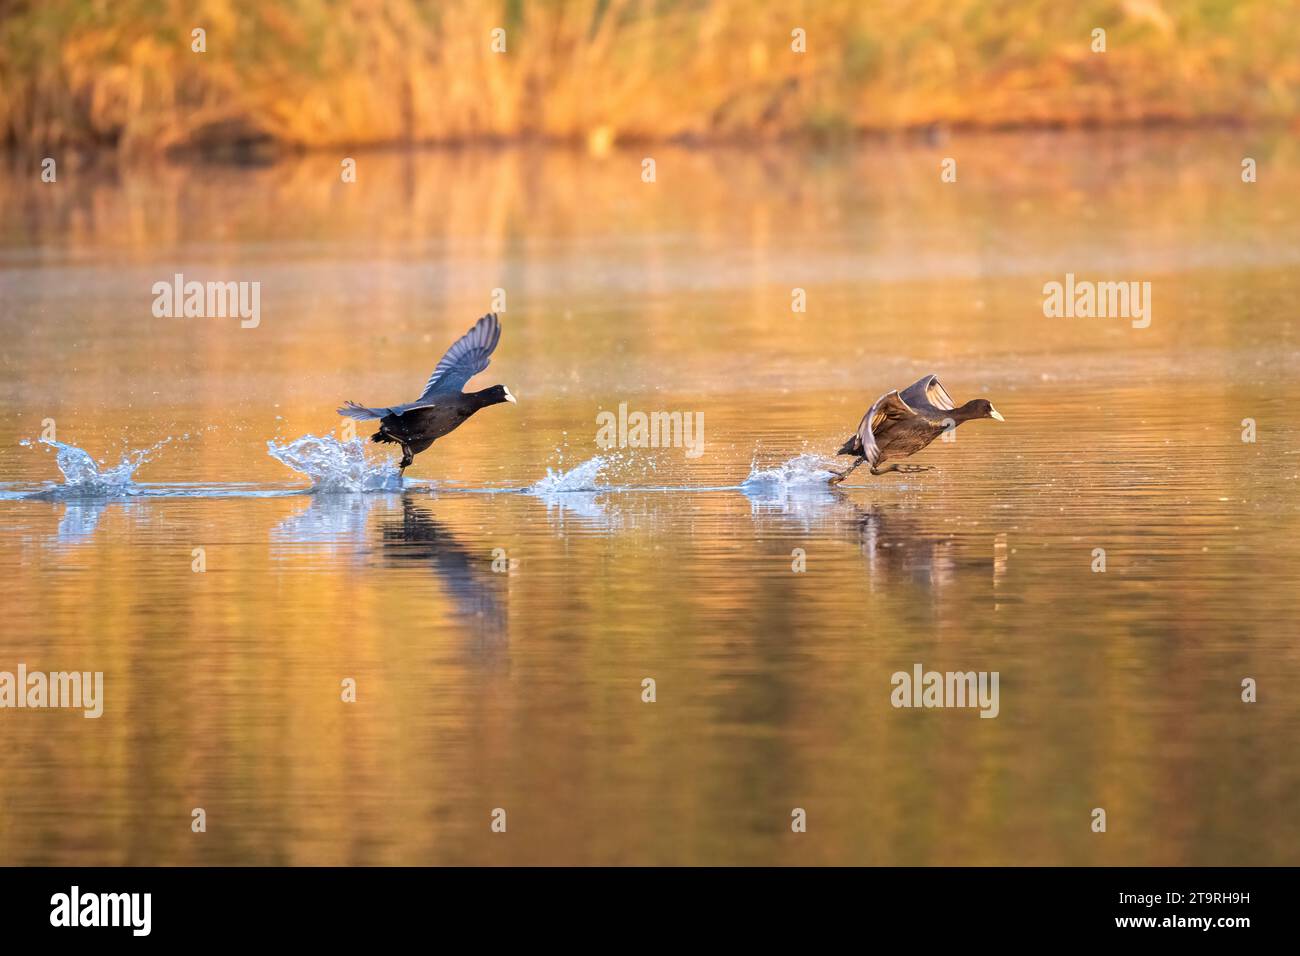 Die fröhlichen Vögel laufen auf dem Wasser CHANDIGARH, INDIEN URKOMISCHE BILDER eines Paares eurasischer Coots, die sich gegenseitig jagen, während sie so schnell zu gehen scheinen Stockfoto